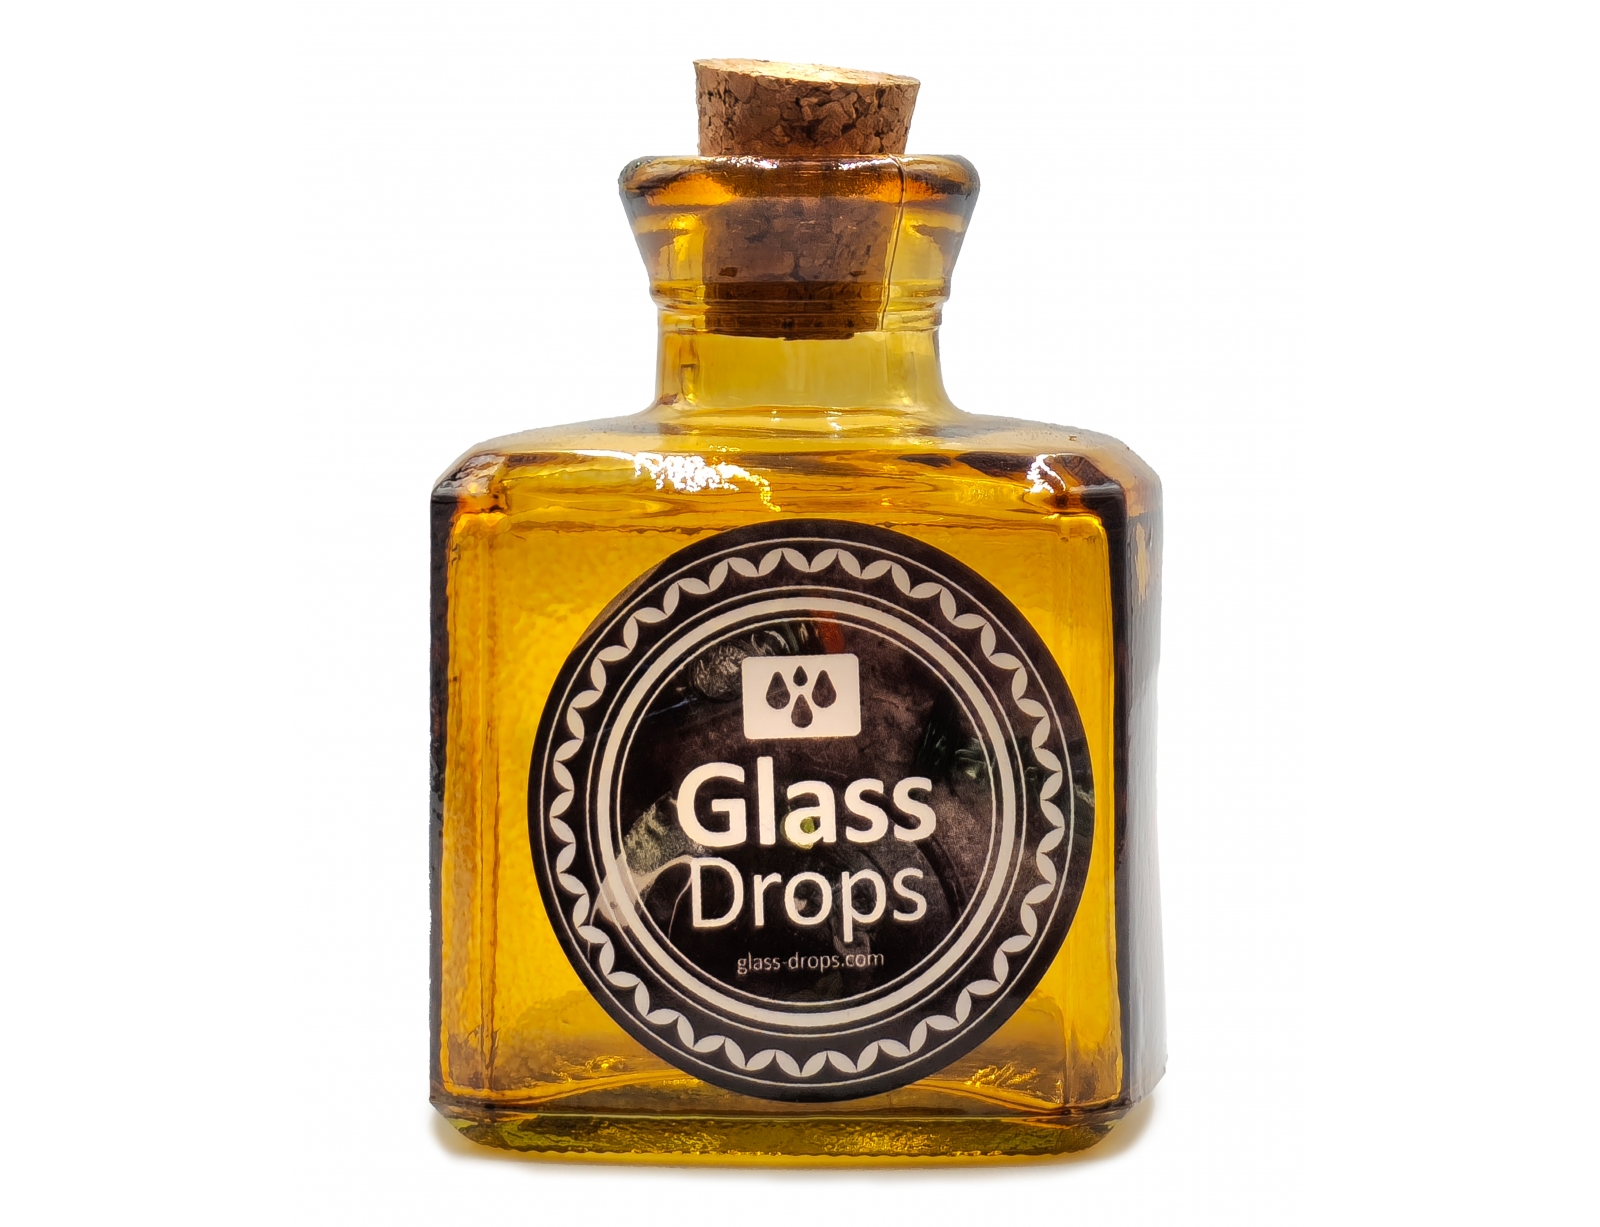 Εικόνα Διακοσμητικό Μπουκάλι με πώμα Glass Drops Cuadrada (5322DB411) Aπό 100% ανακυκλωμένο γυαλί, Xωρητικότητας 200ml, Διαστάσεων Ø 7 x Υ 10 cm, Yellow Gold